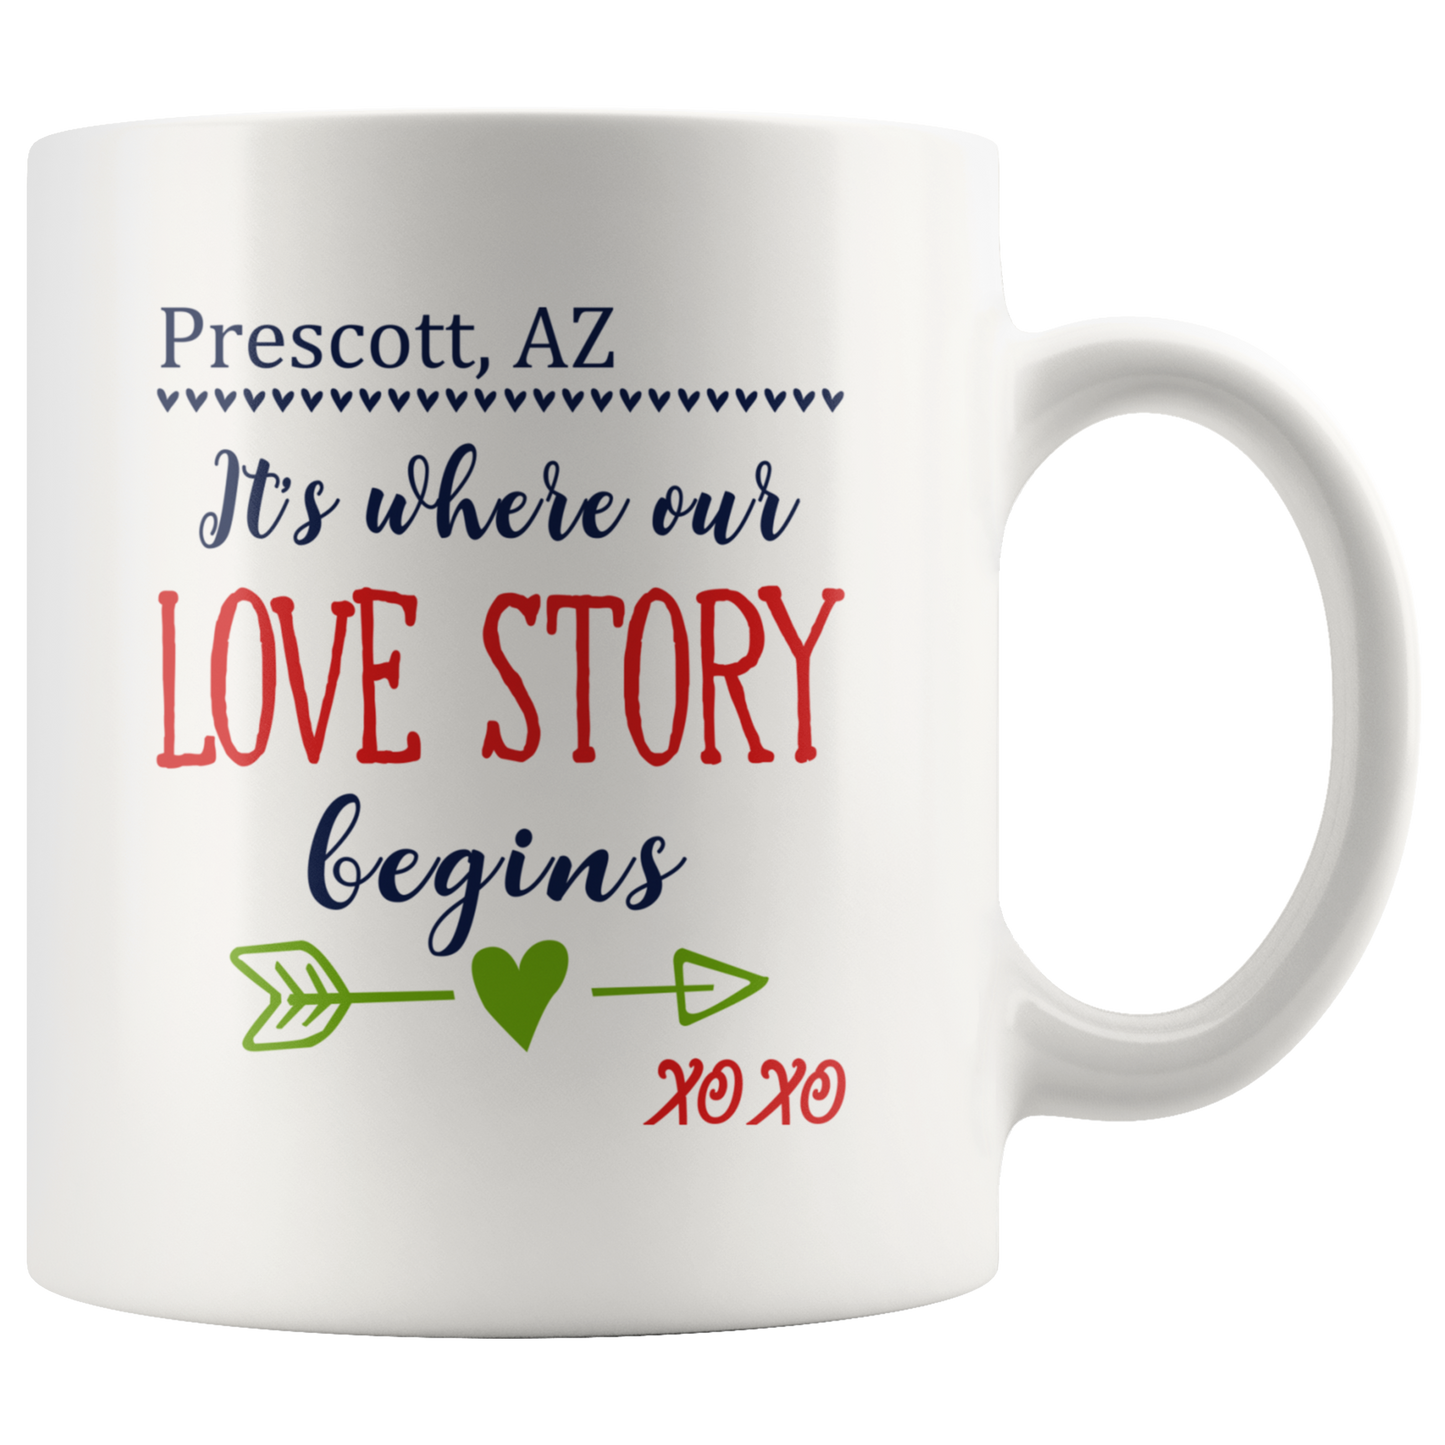 M-Our-20458793-sp-26072 - [ Prescott | Arizona ] (mug_11oz_white) Mothers Day Gifts For Wife Mug - Prescott Arizona AZ Its Whe